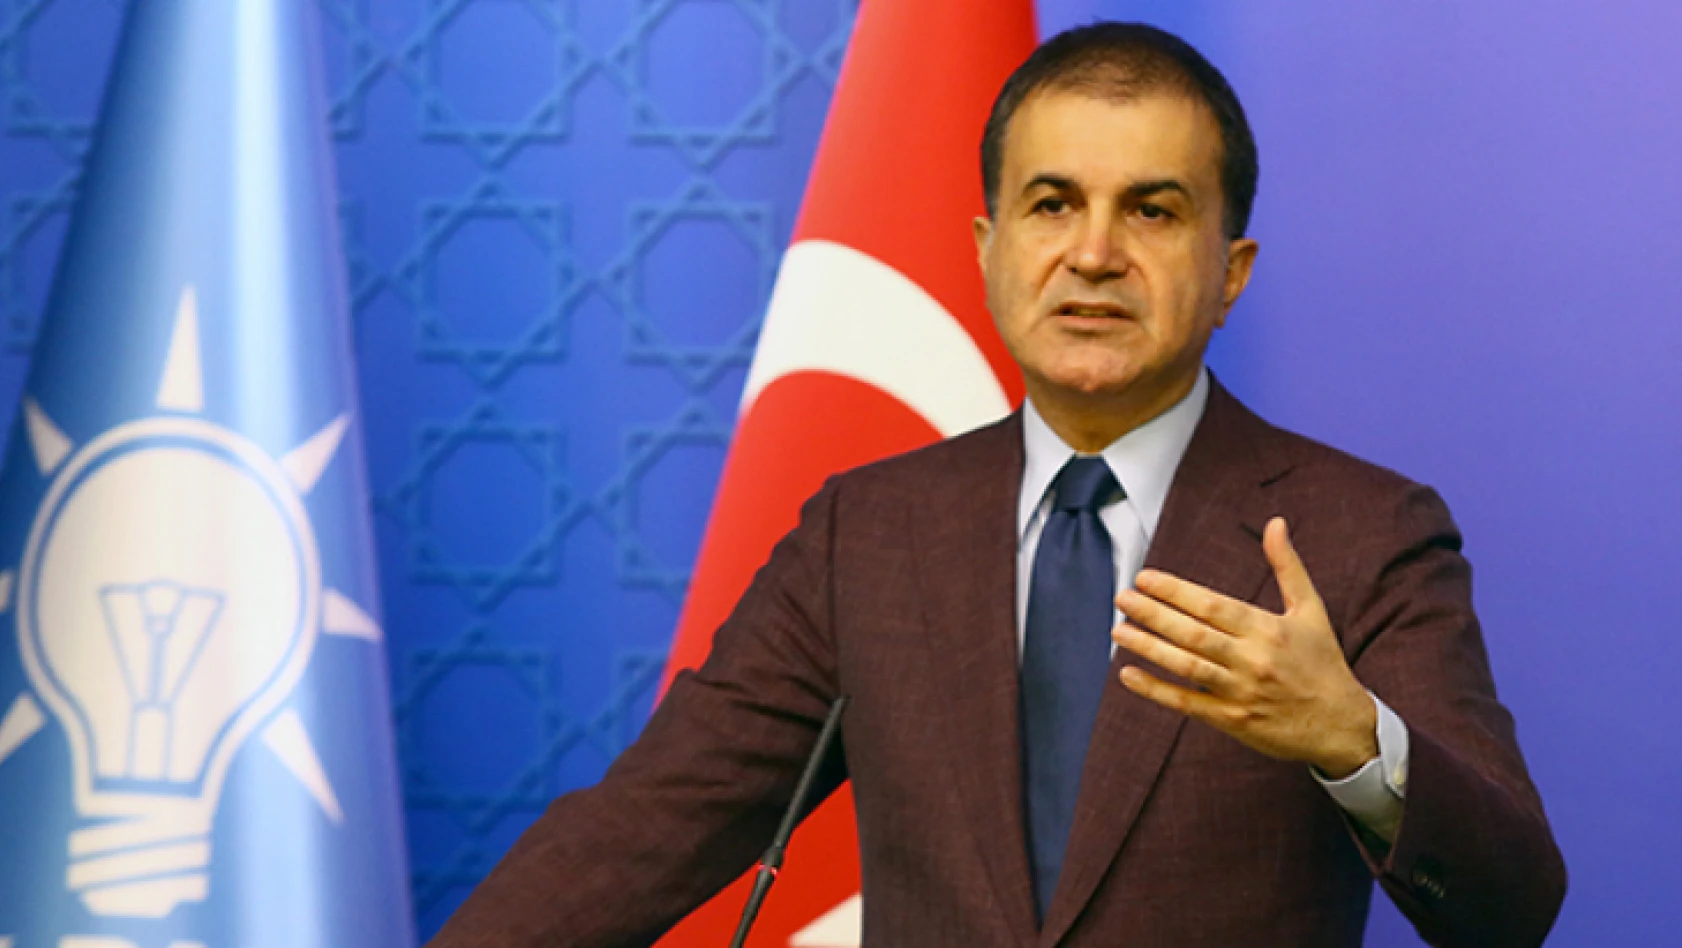 AK Partisi Sözcüsü Çelik'ten Cumhurbaşkanı'na yapılan saldırıya kınama